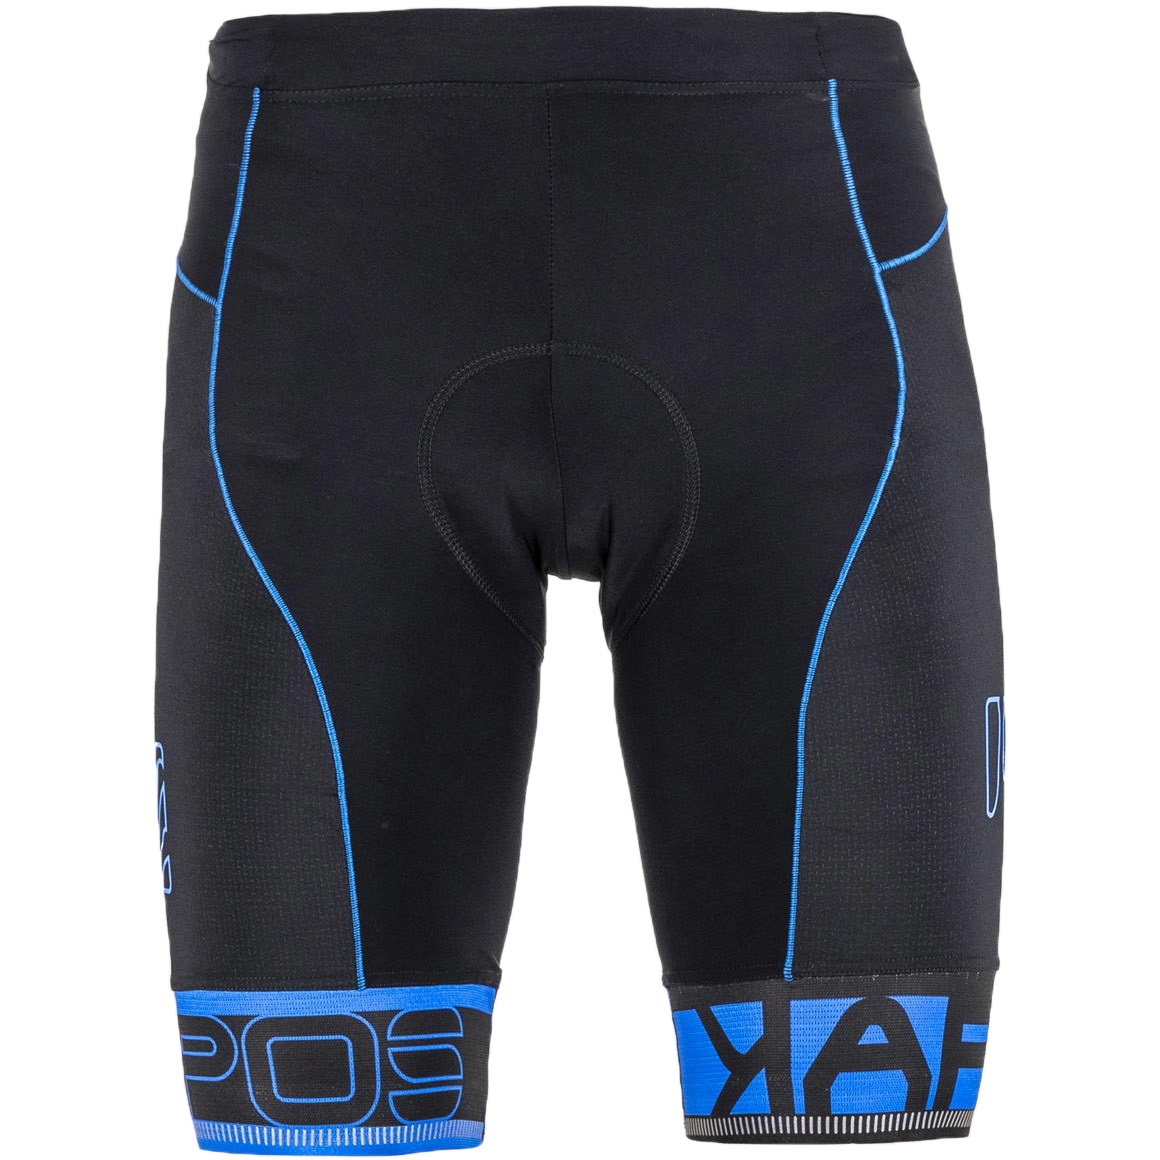 Produktbild von Karpos Verve MTB-Shorts - black/indigo blue